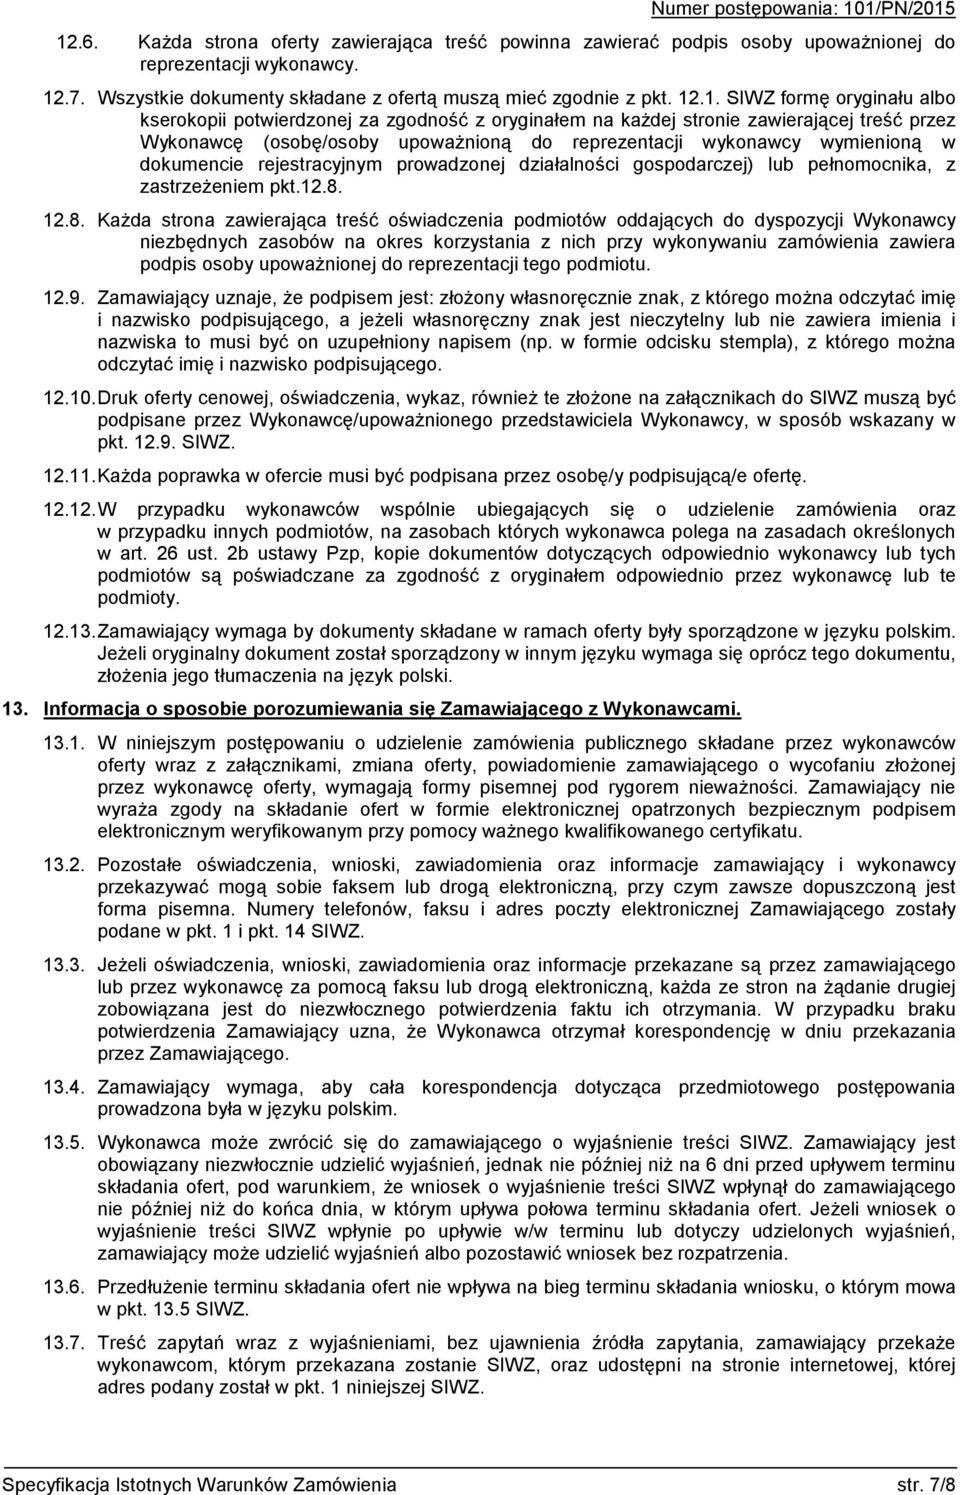 rejestracyjnym prowadzonej działalności gospodarczej) lub pełnomocnika, z zastrzeżeniem pkt.12.8.